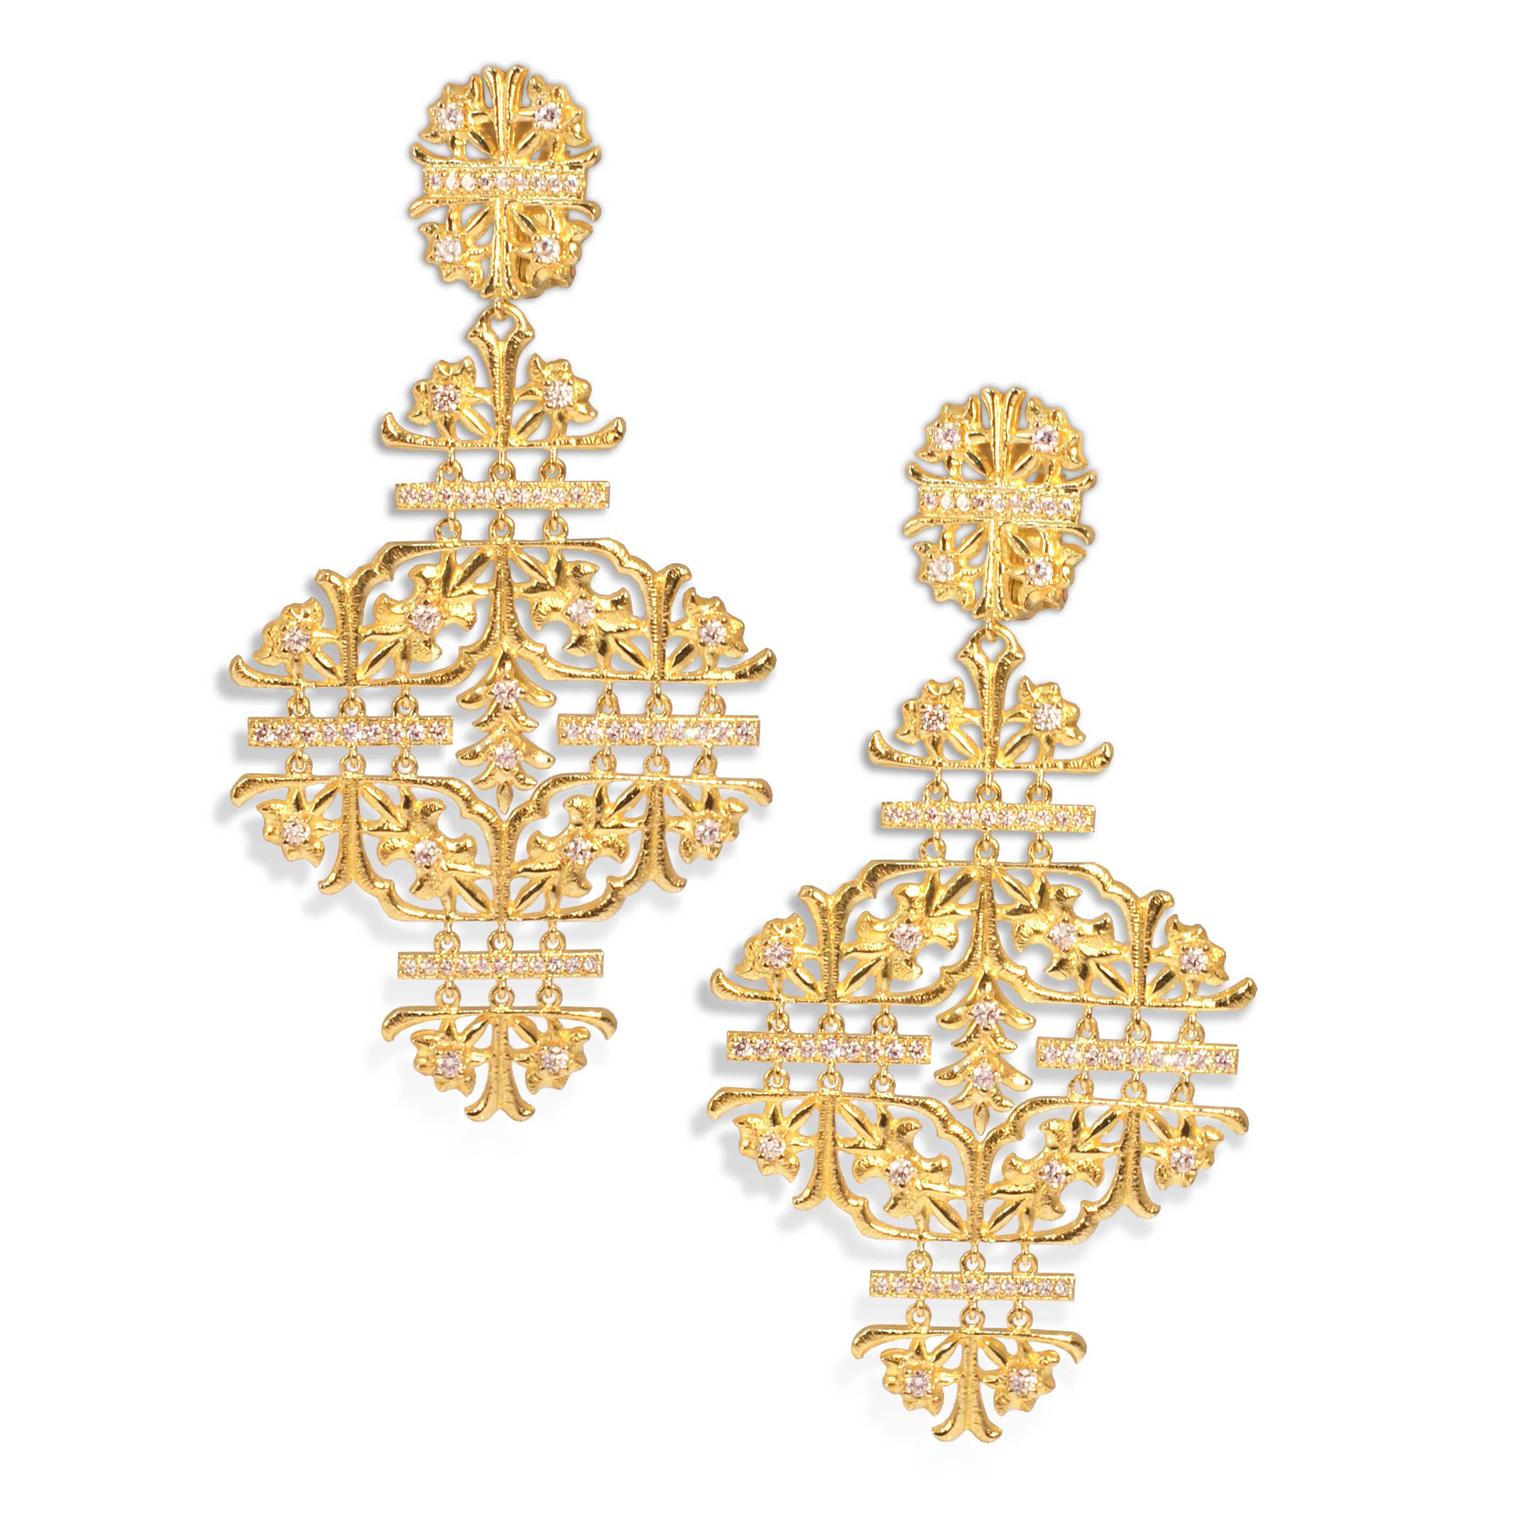 Lalaounis Aurelia chandelier earrings